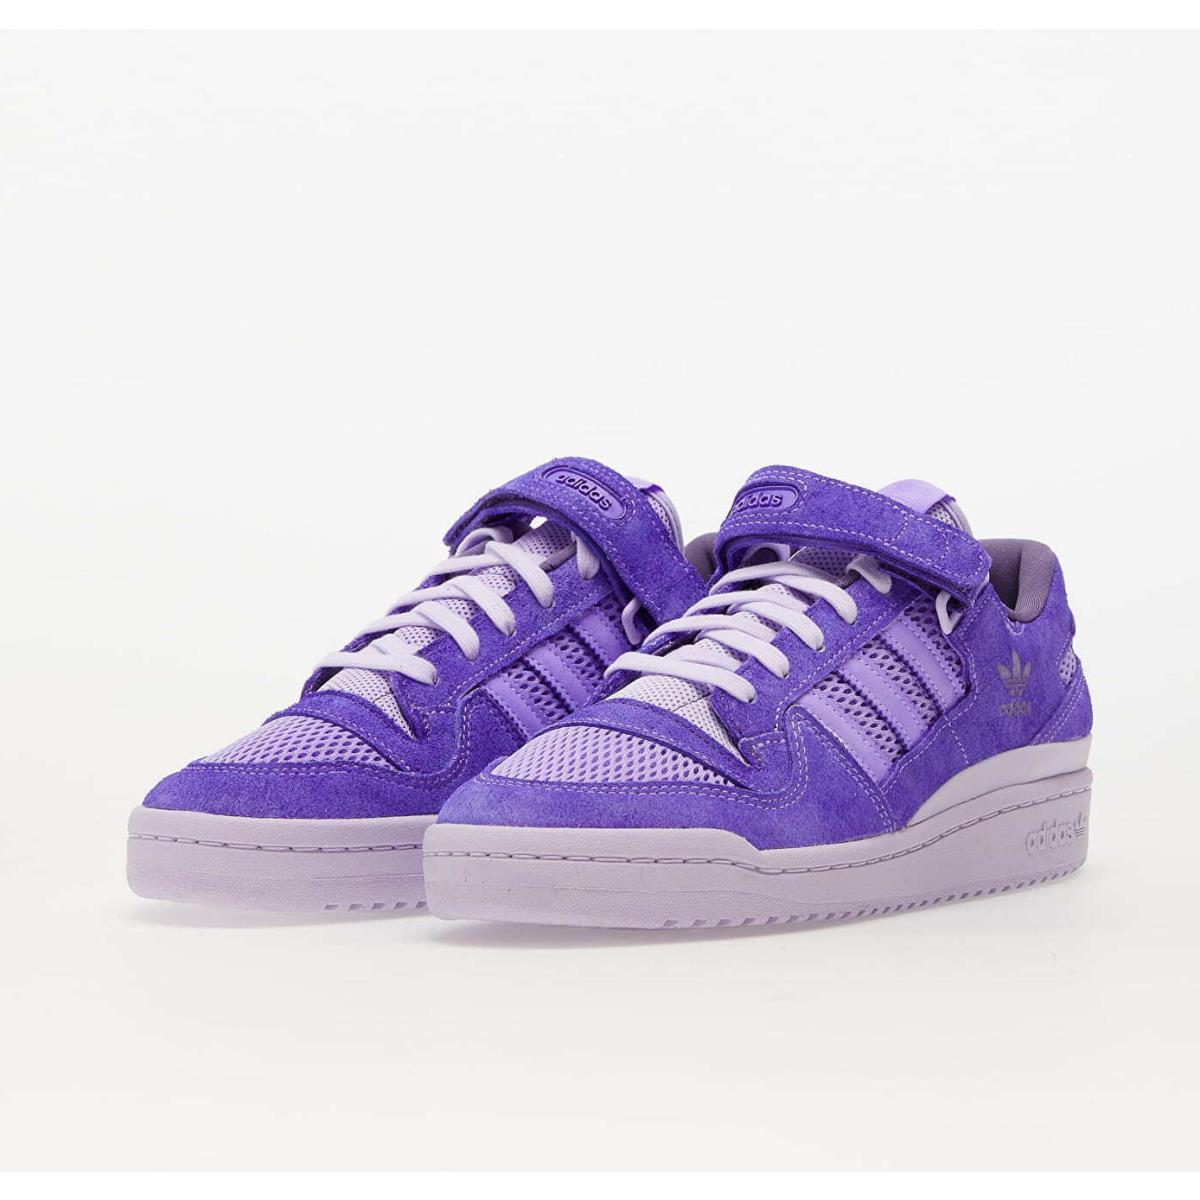 Adidas Originals Forum 84 Low 8K Tech Purple GZ6480 Skate Shoes Sneakers